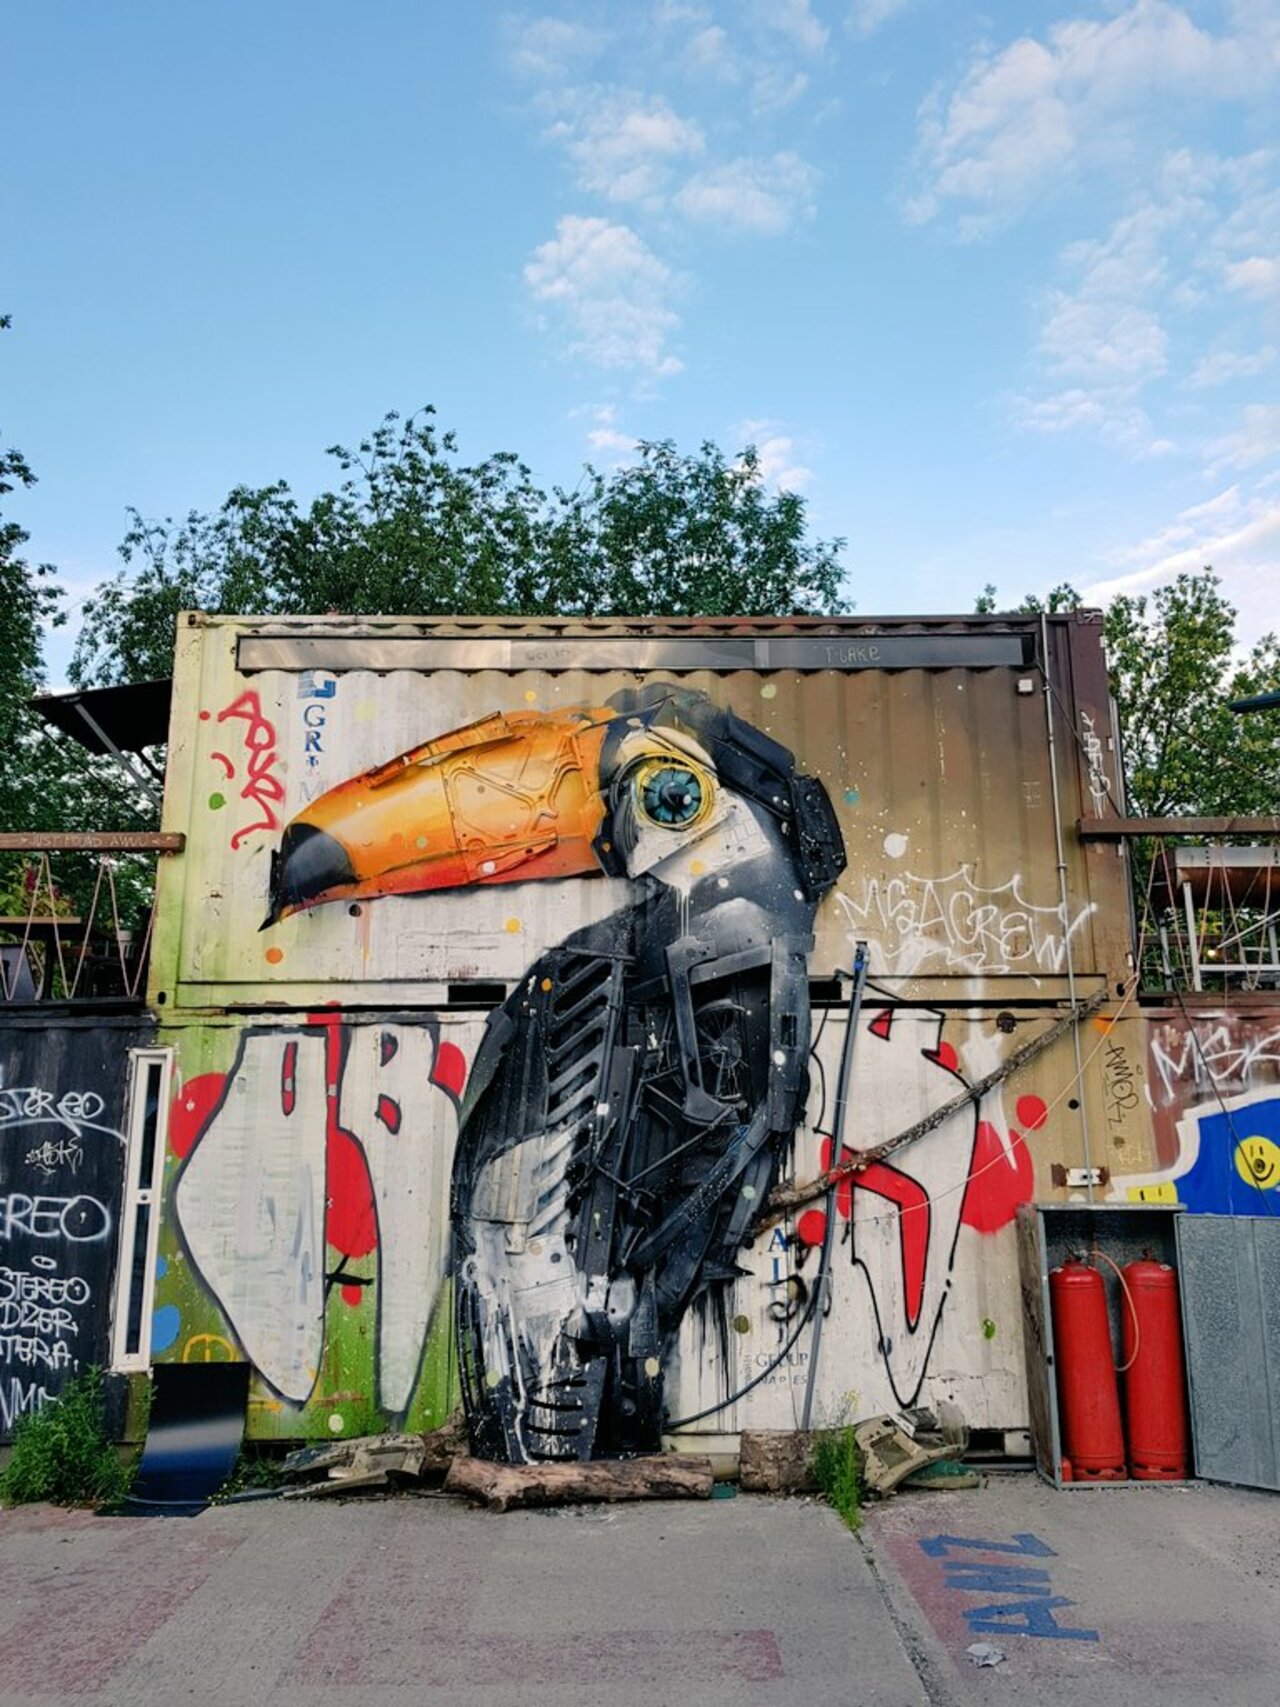 Love Urban Spree!#streetart #graffiti #berlin #cinema https://t.co/iQw7DrEjWM